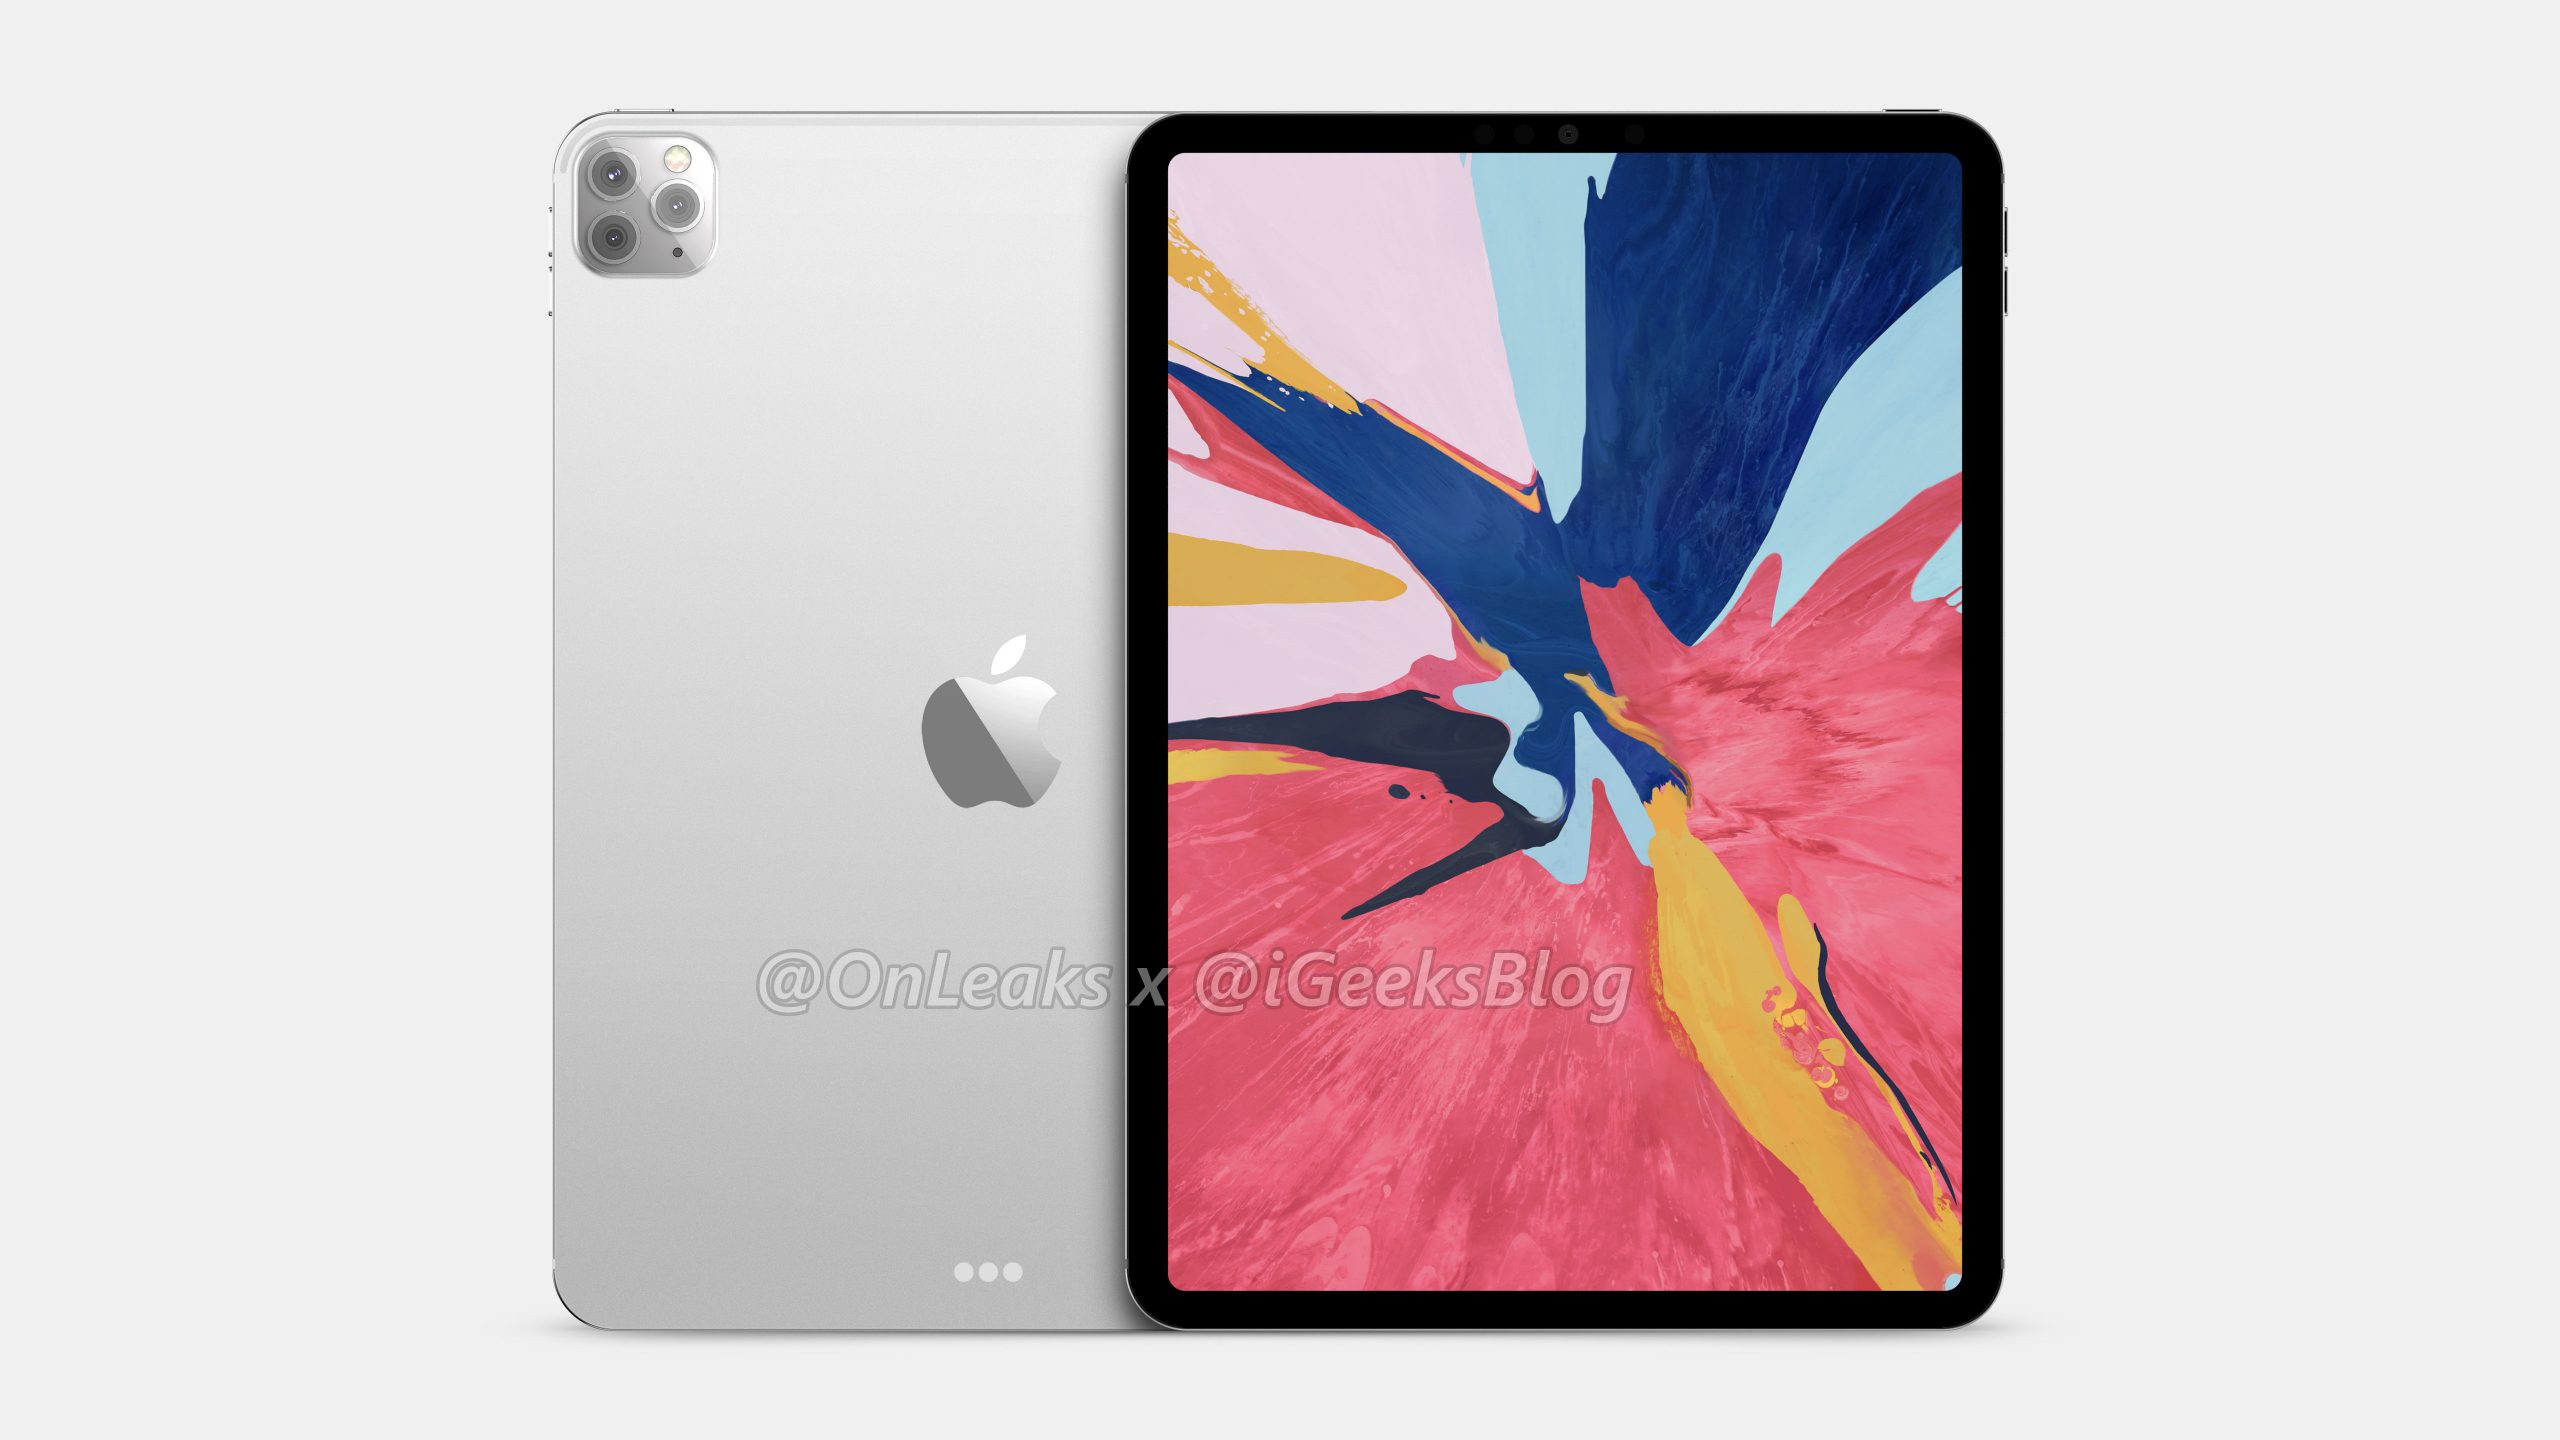 Apple nowy iPad Pro 2020 rendery aparat jak iPhone 11 Pro tablety specyfikacja dane techniczne kiedy premiera